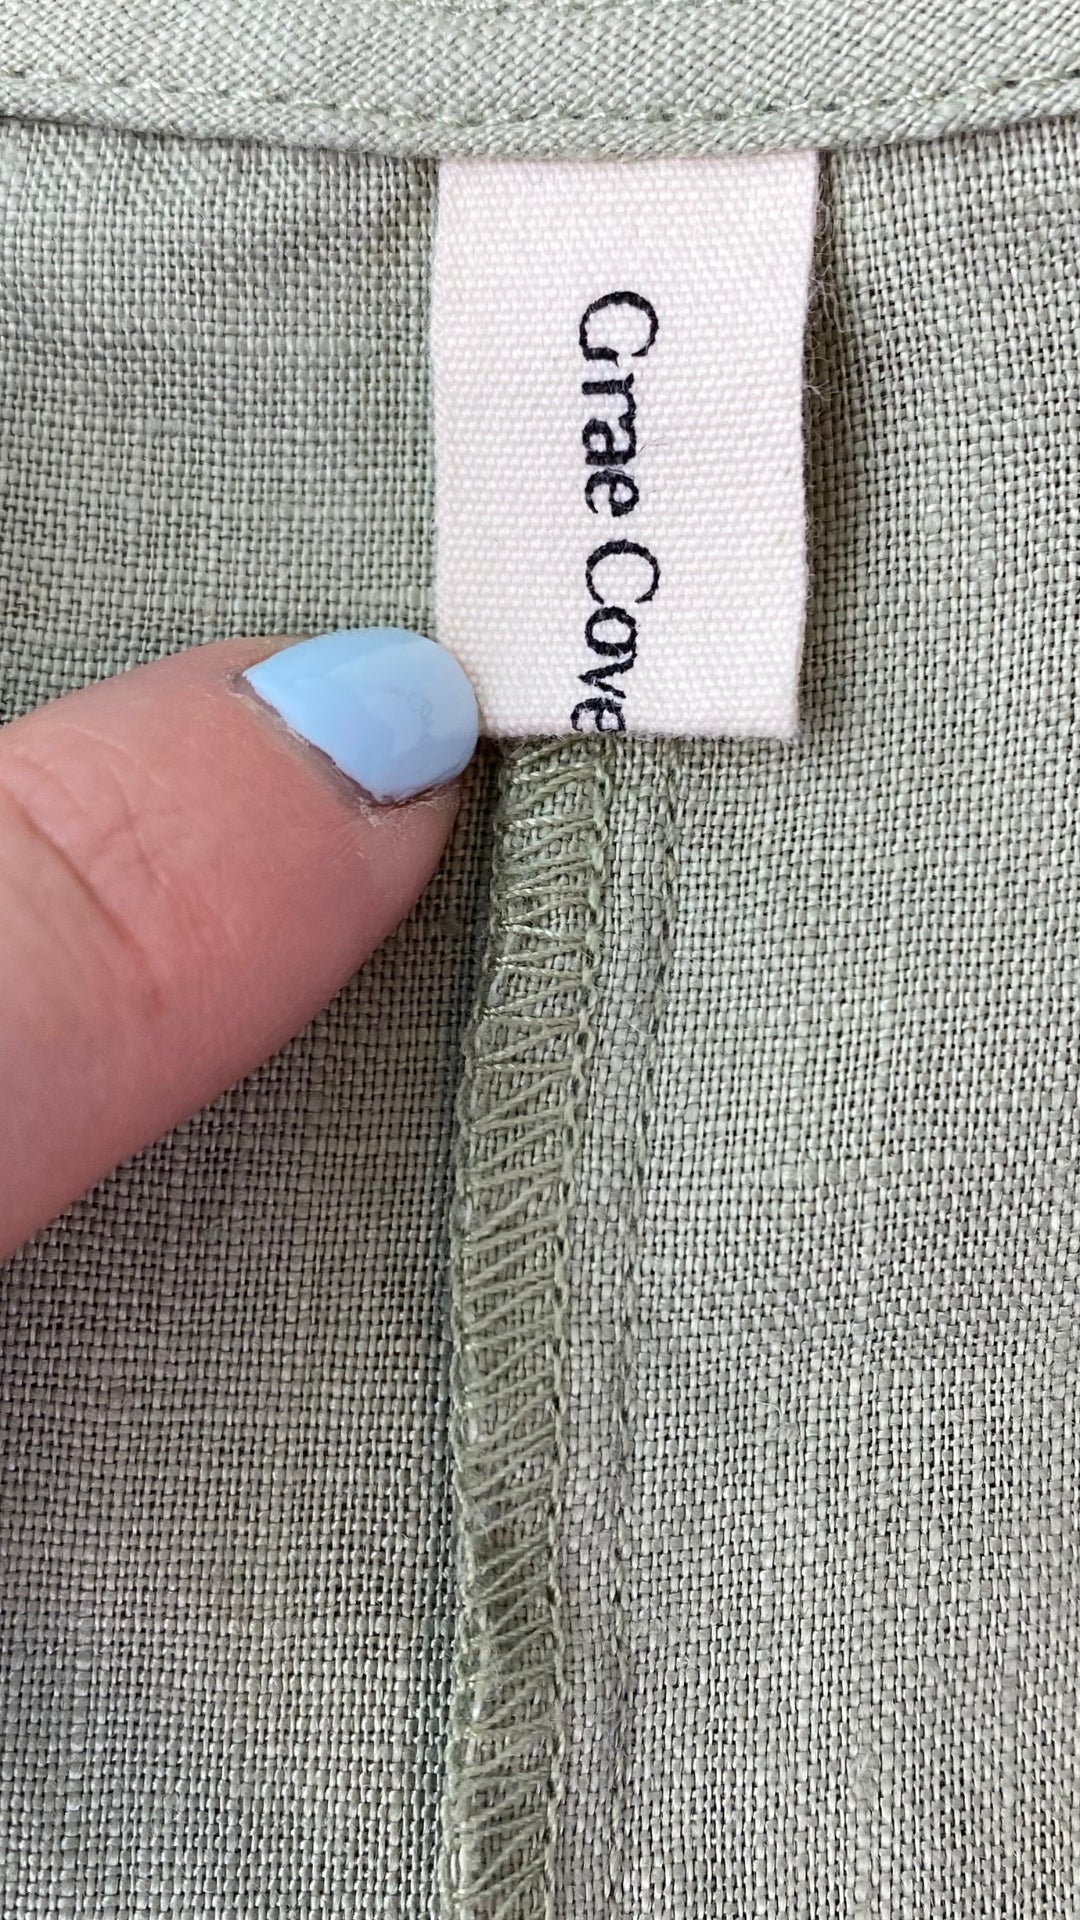 Robe sauge en lin avec poches Grae Cove, taille small. Vue de l'étiquette de marque.